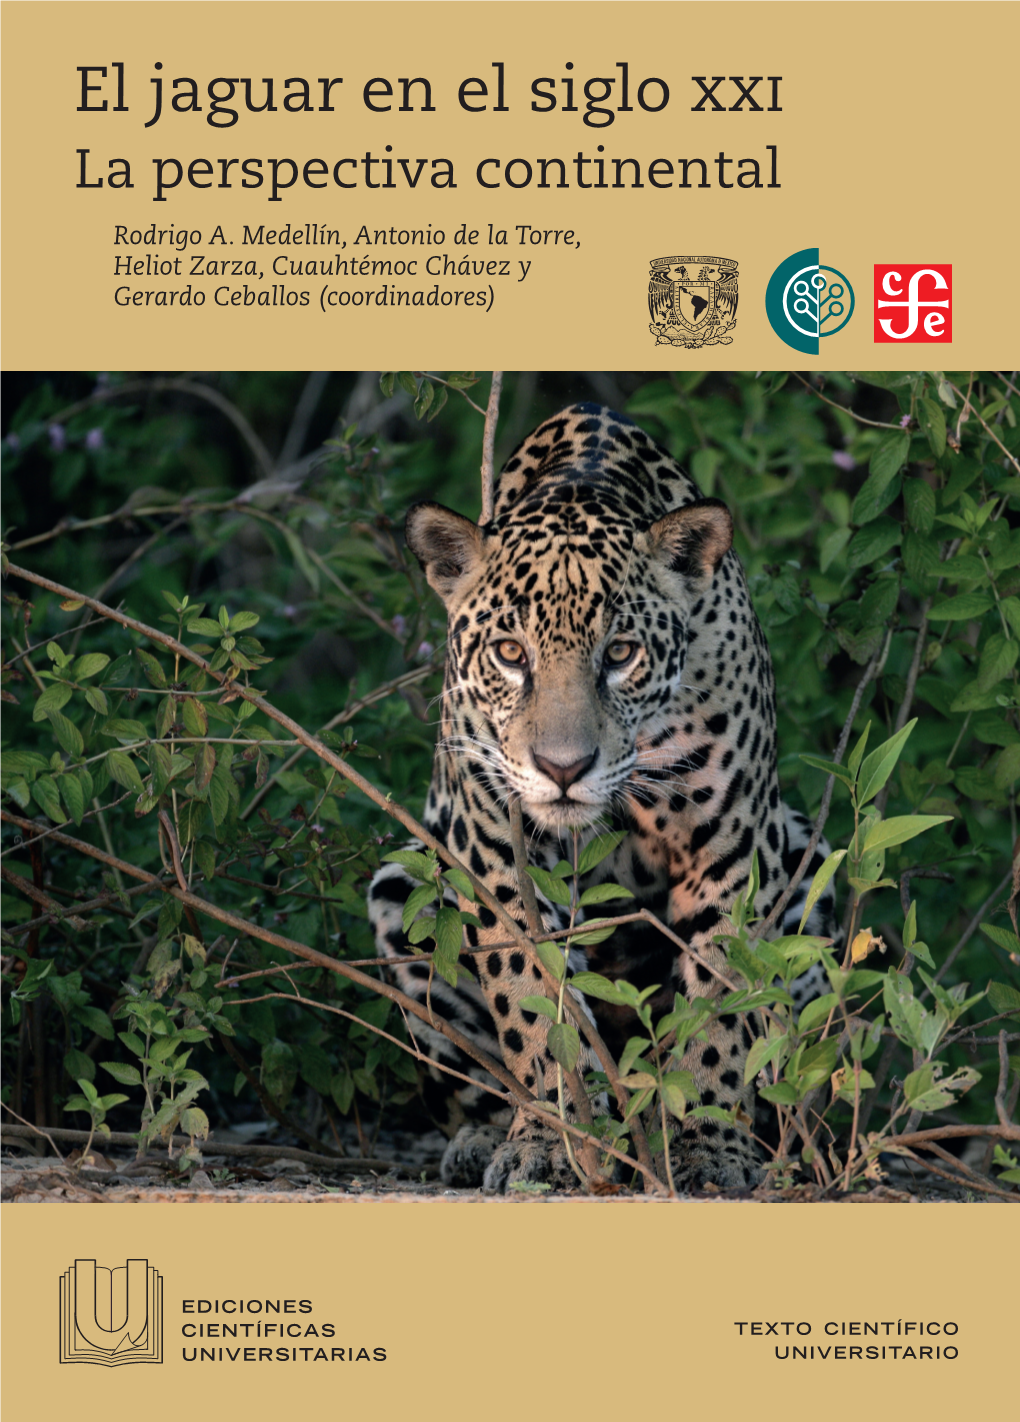 El Jaguar En El Siglo Xxi: La Perspectiva Continental, Por Su Cordial Invitación a Participar En Esta Iniciativa En Mérida, México